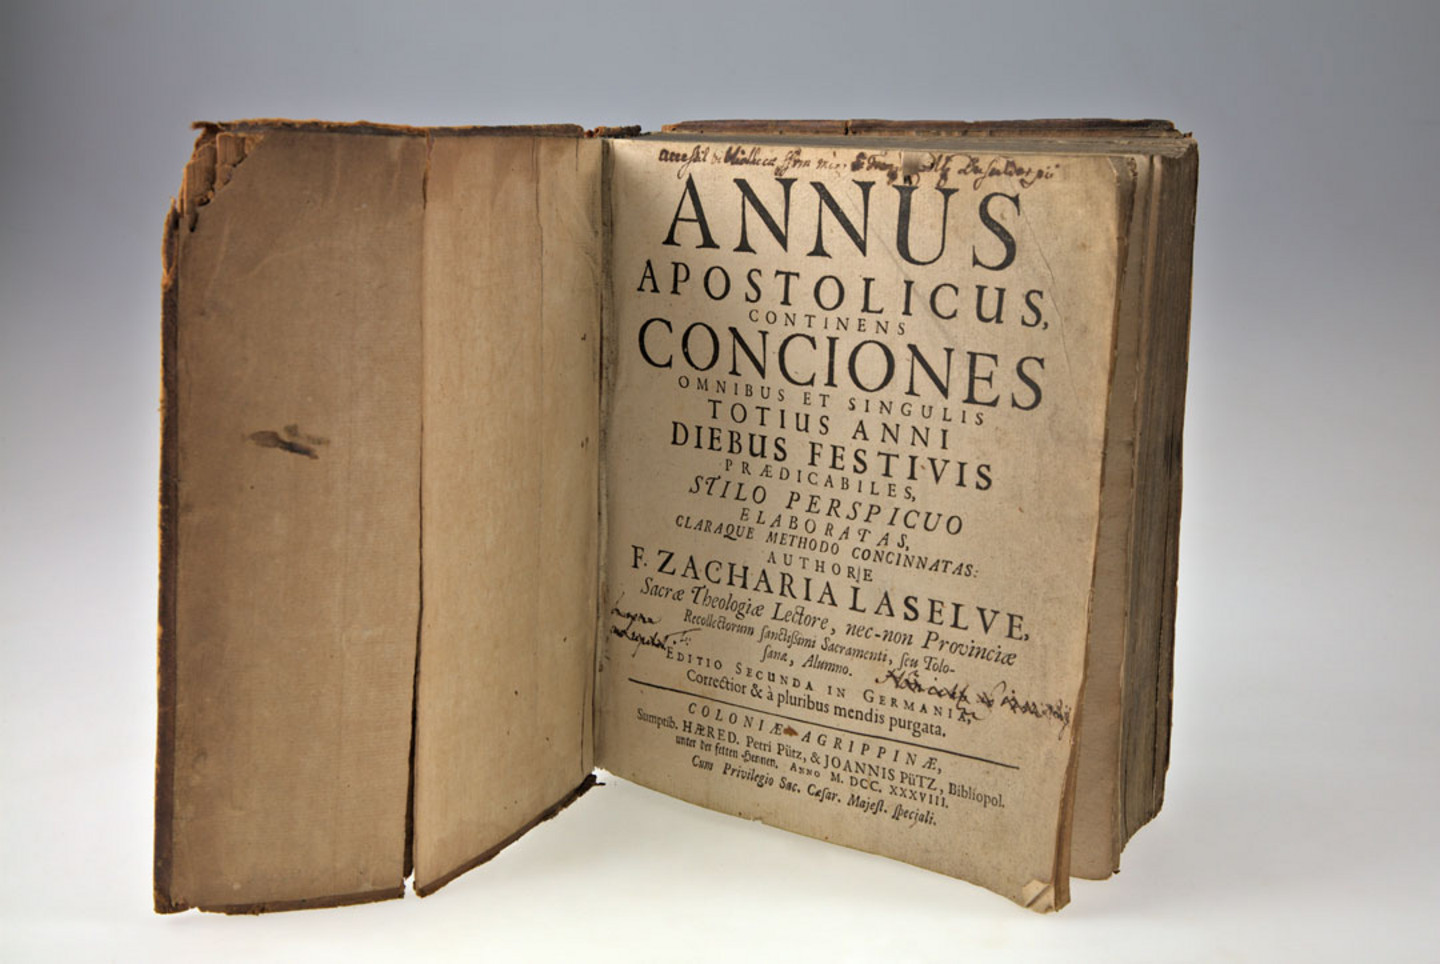 Foto beschädigter Bücher aus dem Jahr 1738: Laselve, Zachari: Annus apostolicus. Coloniae: Pütz,1738. Signatur: WEIN.D40+A